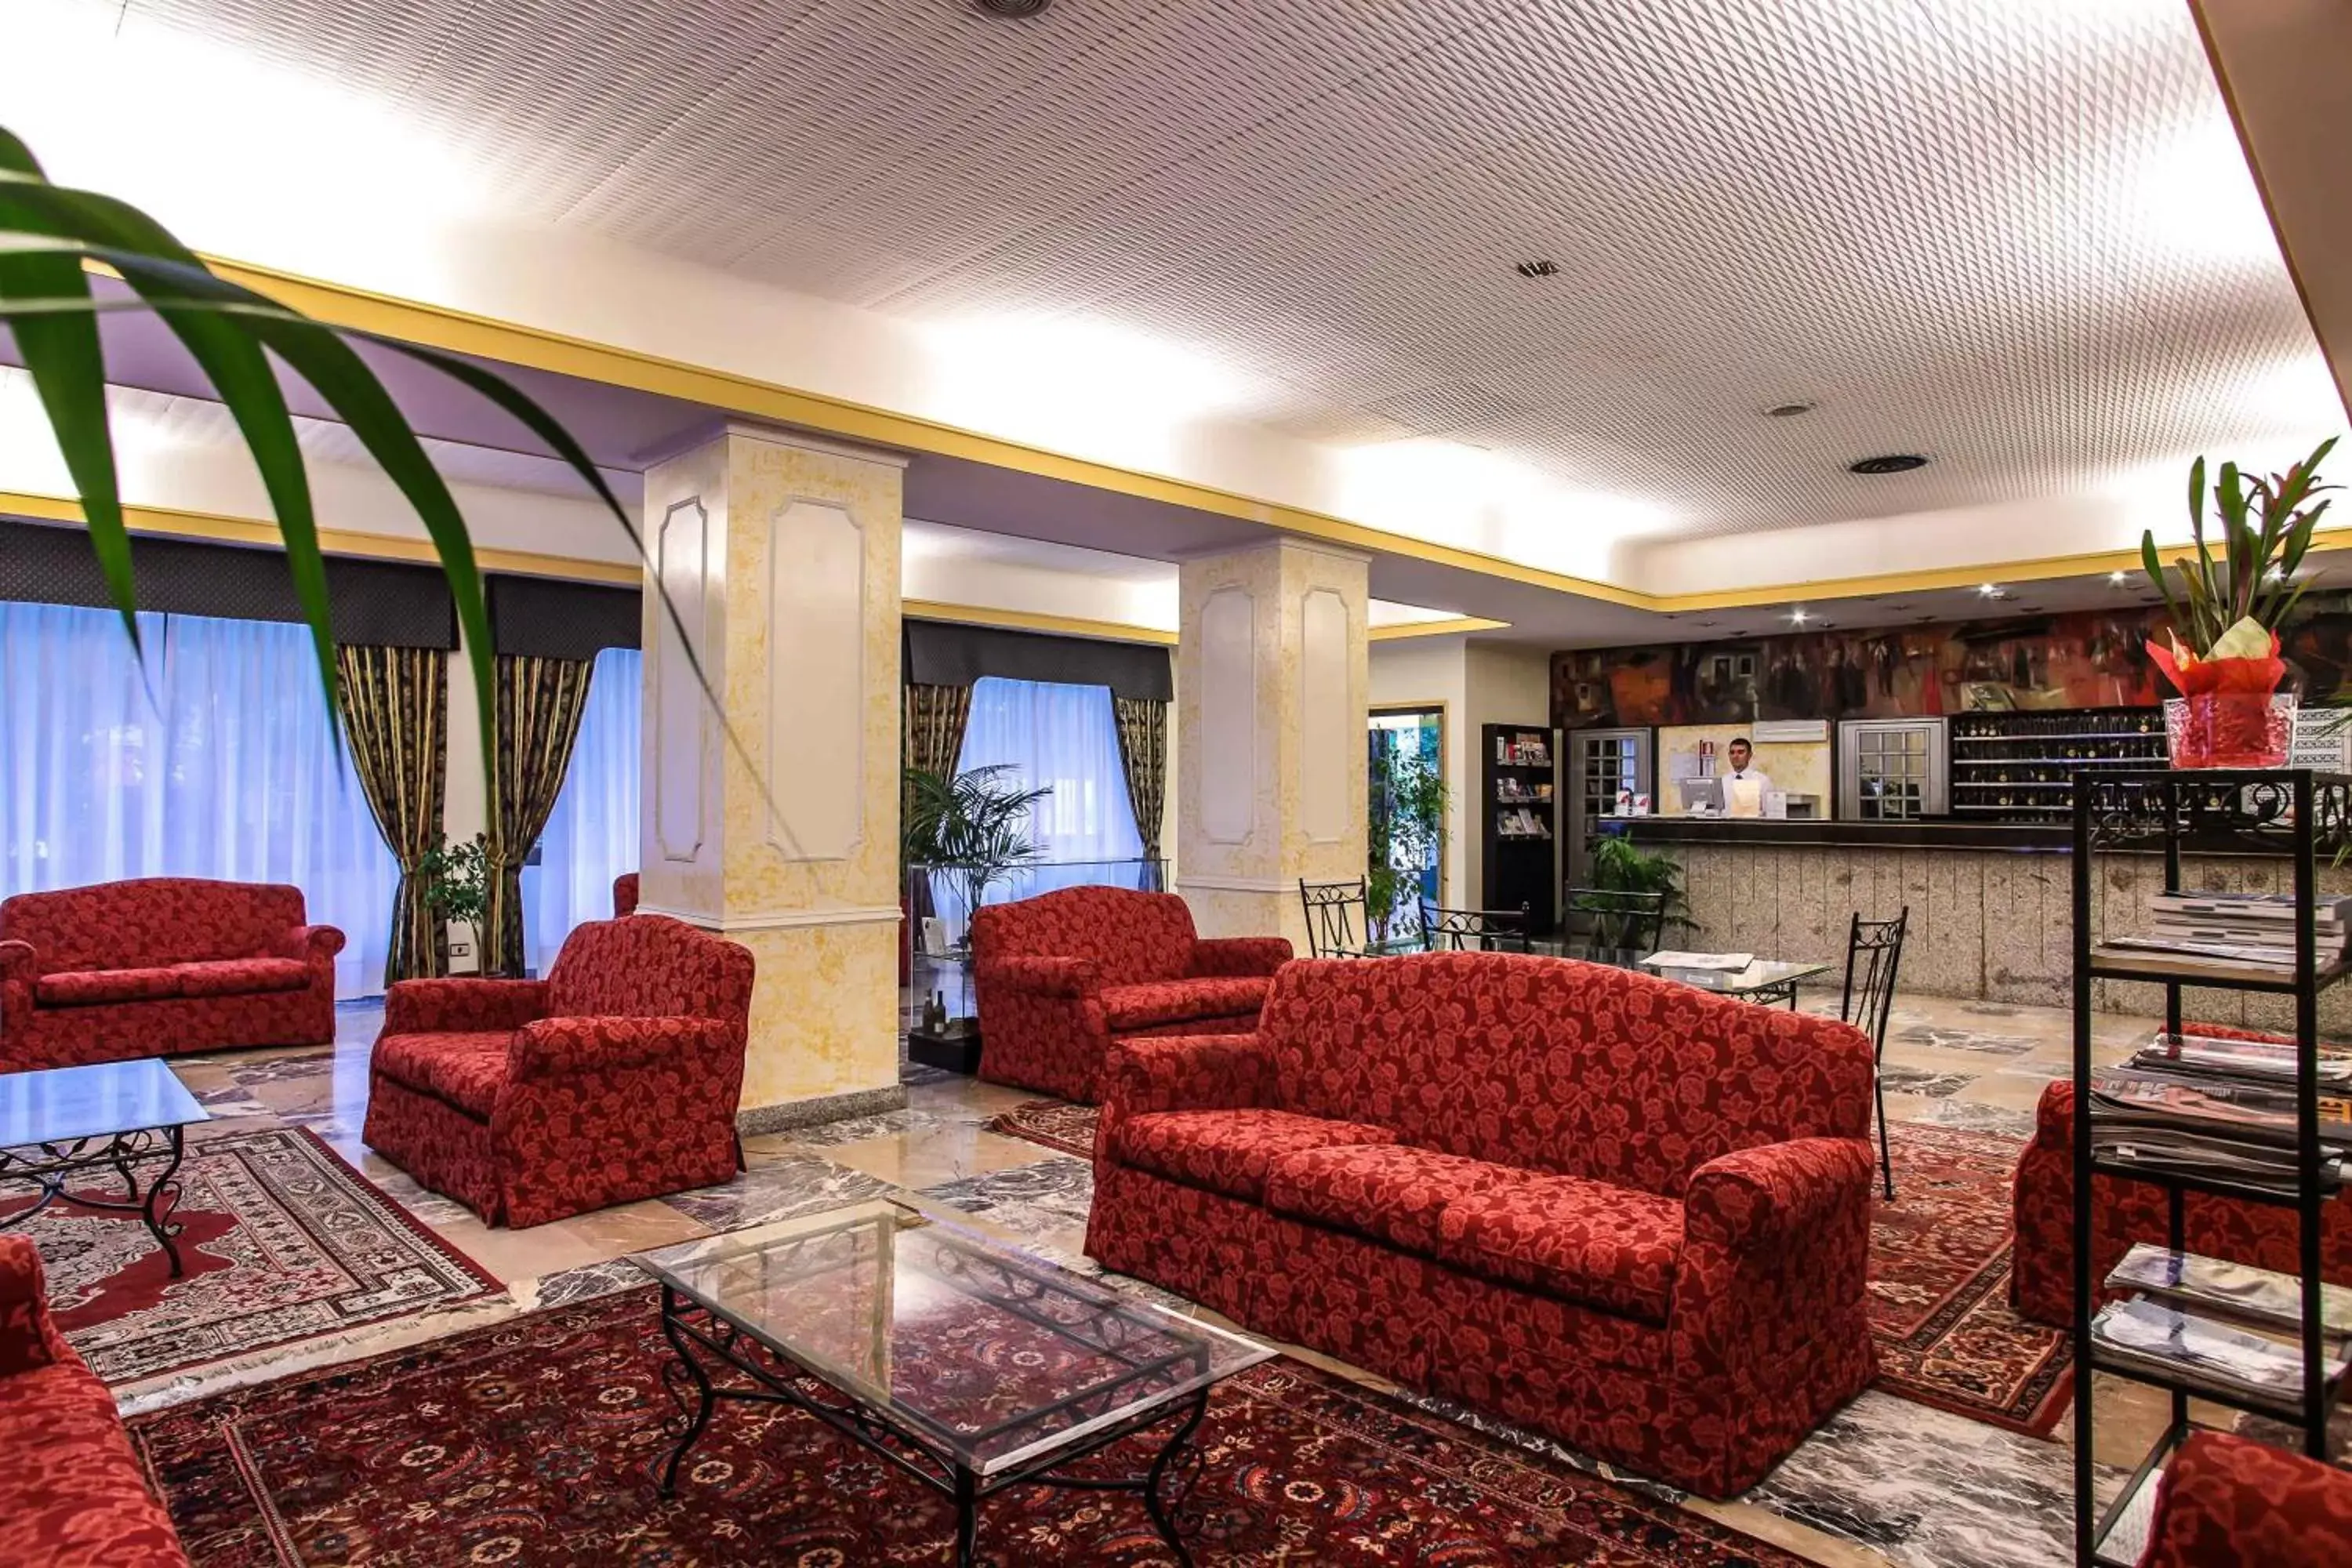 Lobby or reception, Lobby/Reception in Hotel Grazia Deledda